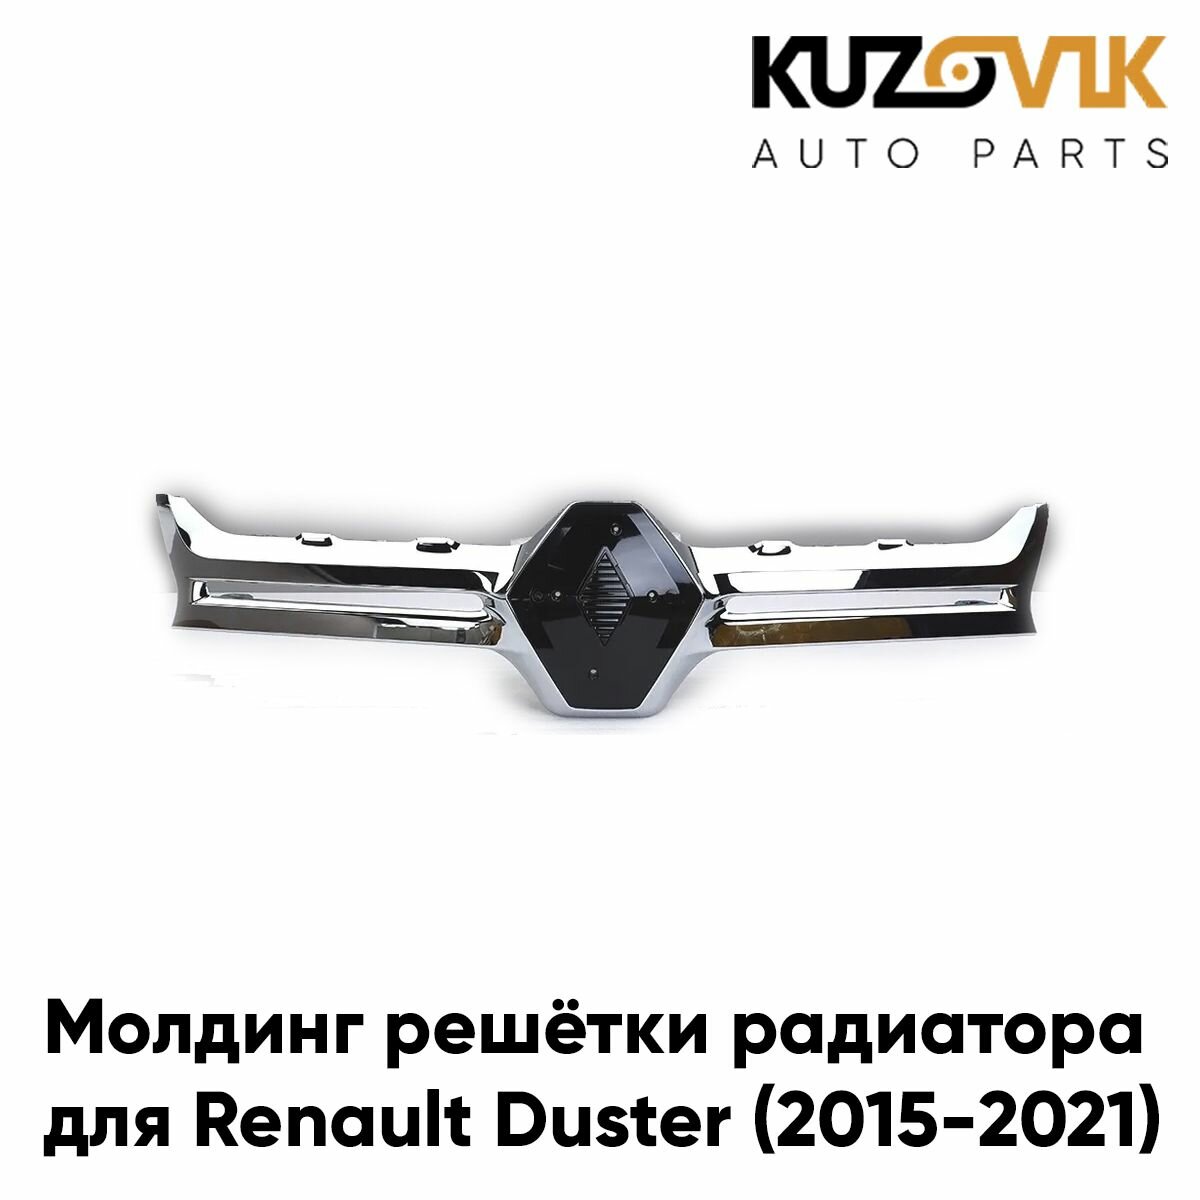 Молдинг решетки радиатора для Рено Дастер Renault Duster (2015-2021) рестайлинг хром